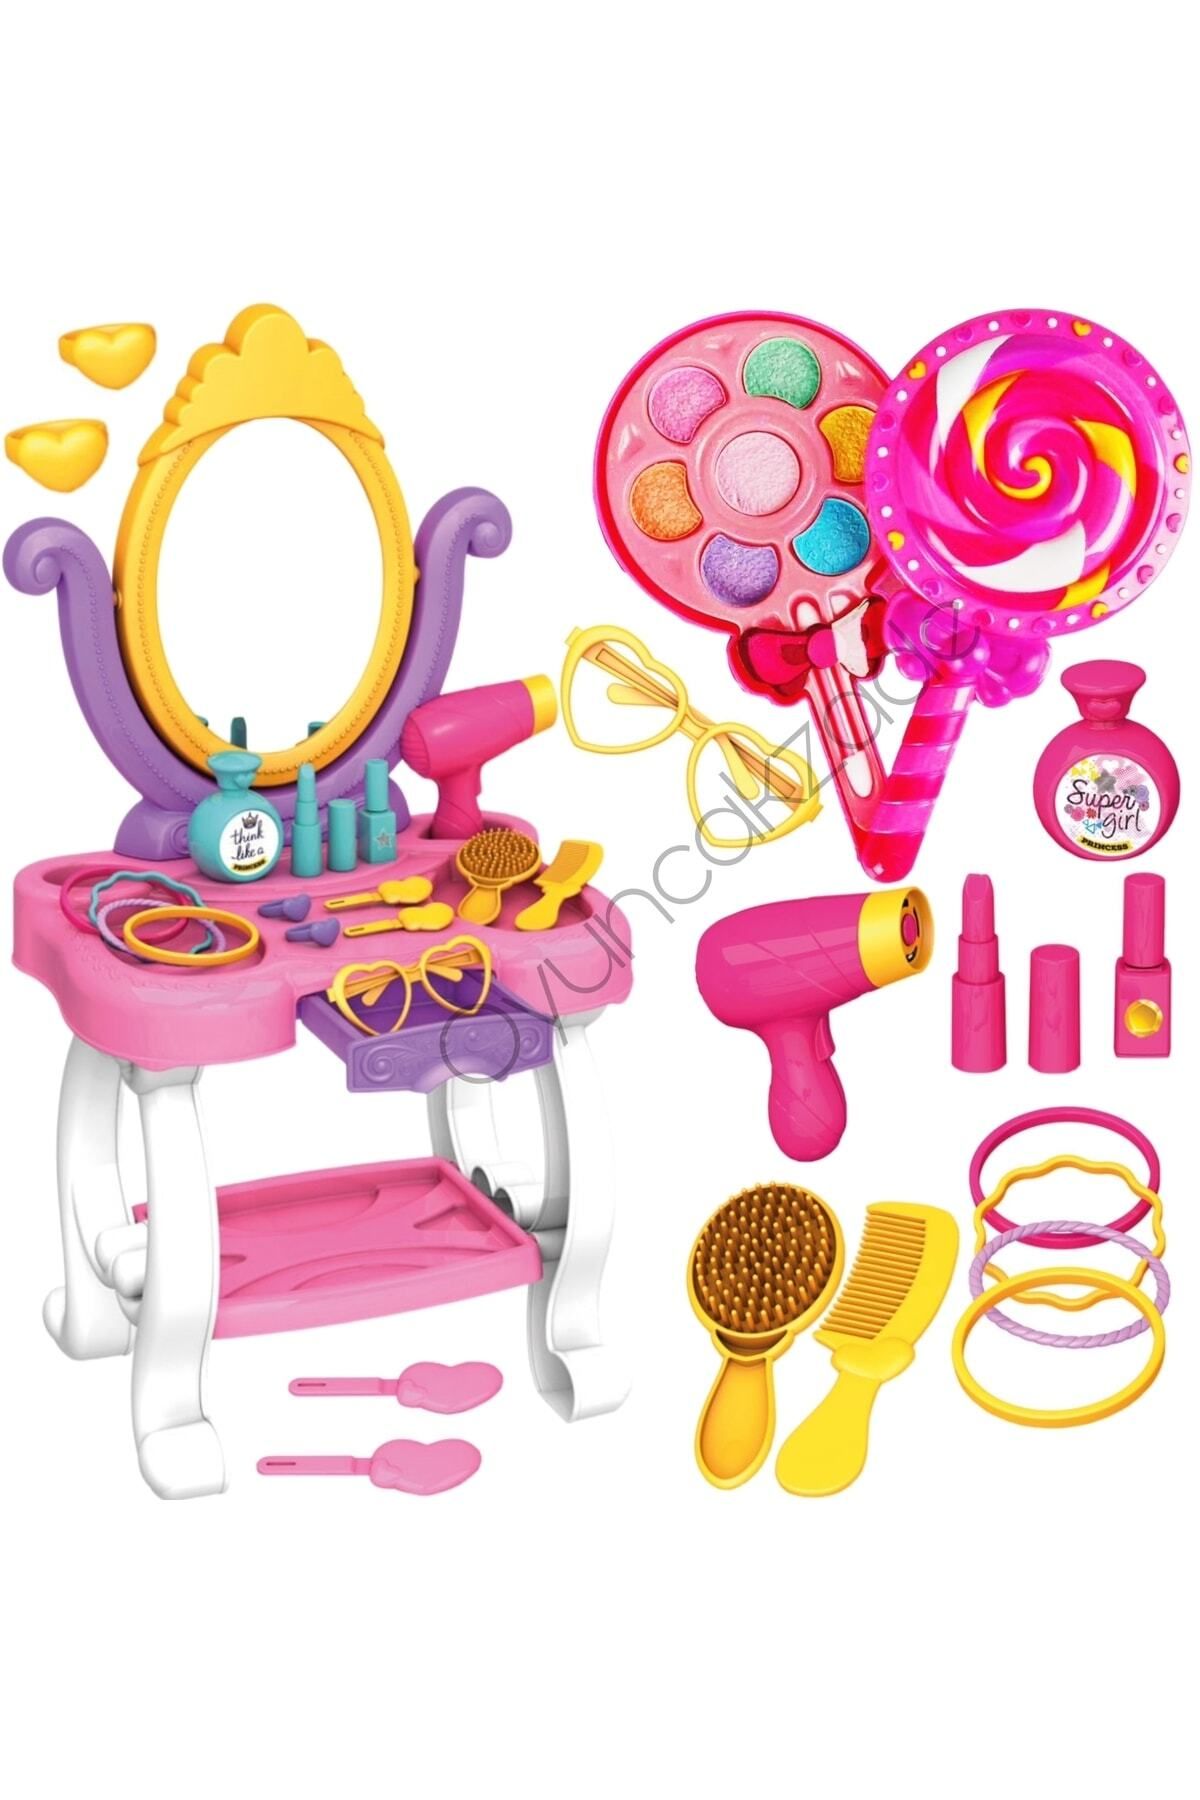 Depomiks Avm Prenses Makyaj Masası Aynalı Aksesuarlı Oyuncak Lolipop Sürülebilir Makyaj Seti Kız Çocuk Makyaj